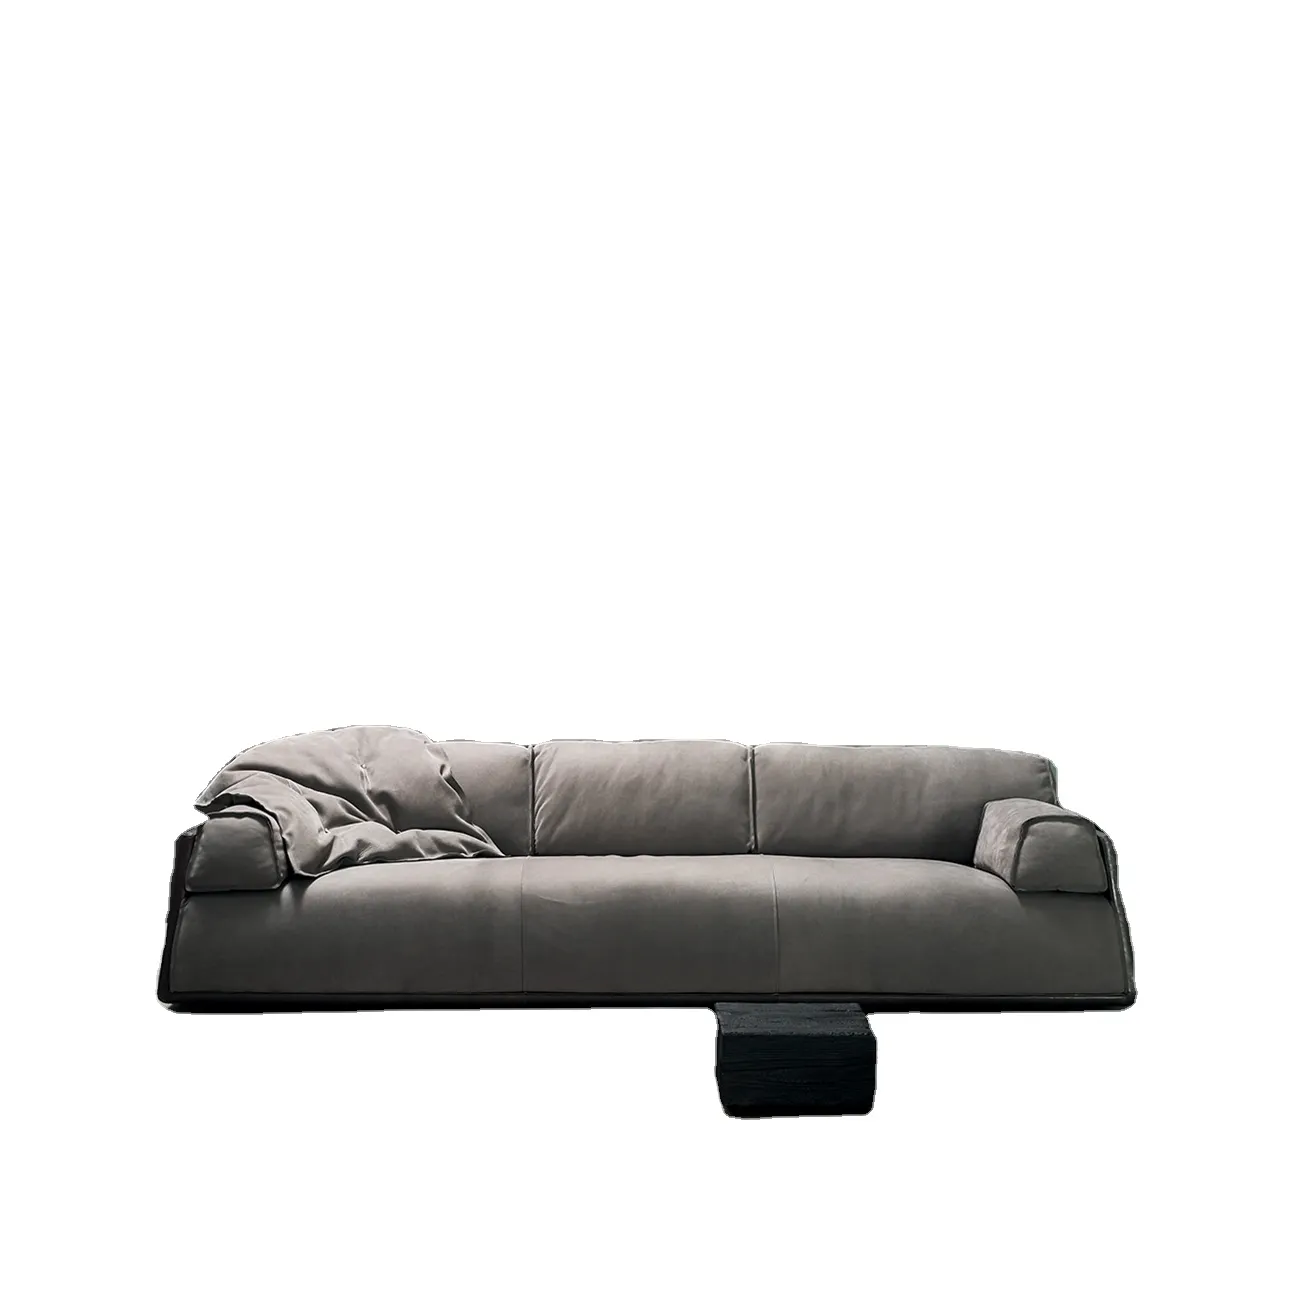 Лучшие продажи диван клуб Ванна кресло в продаже гостиная мебель 3-местный диван современный простой стиль ткань кожаный диван с деревянным каркасом